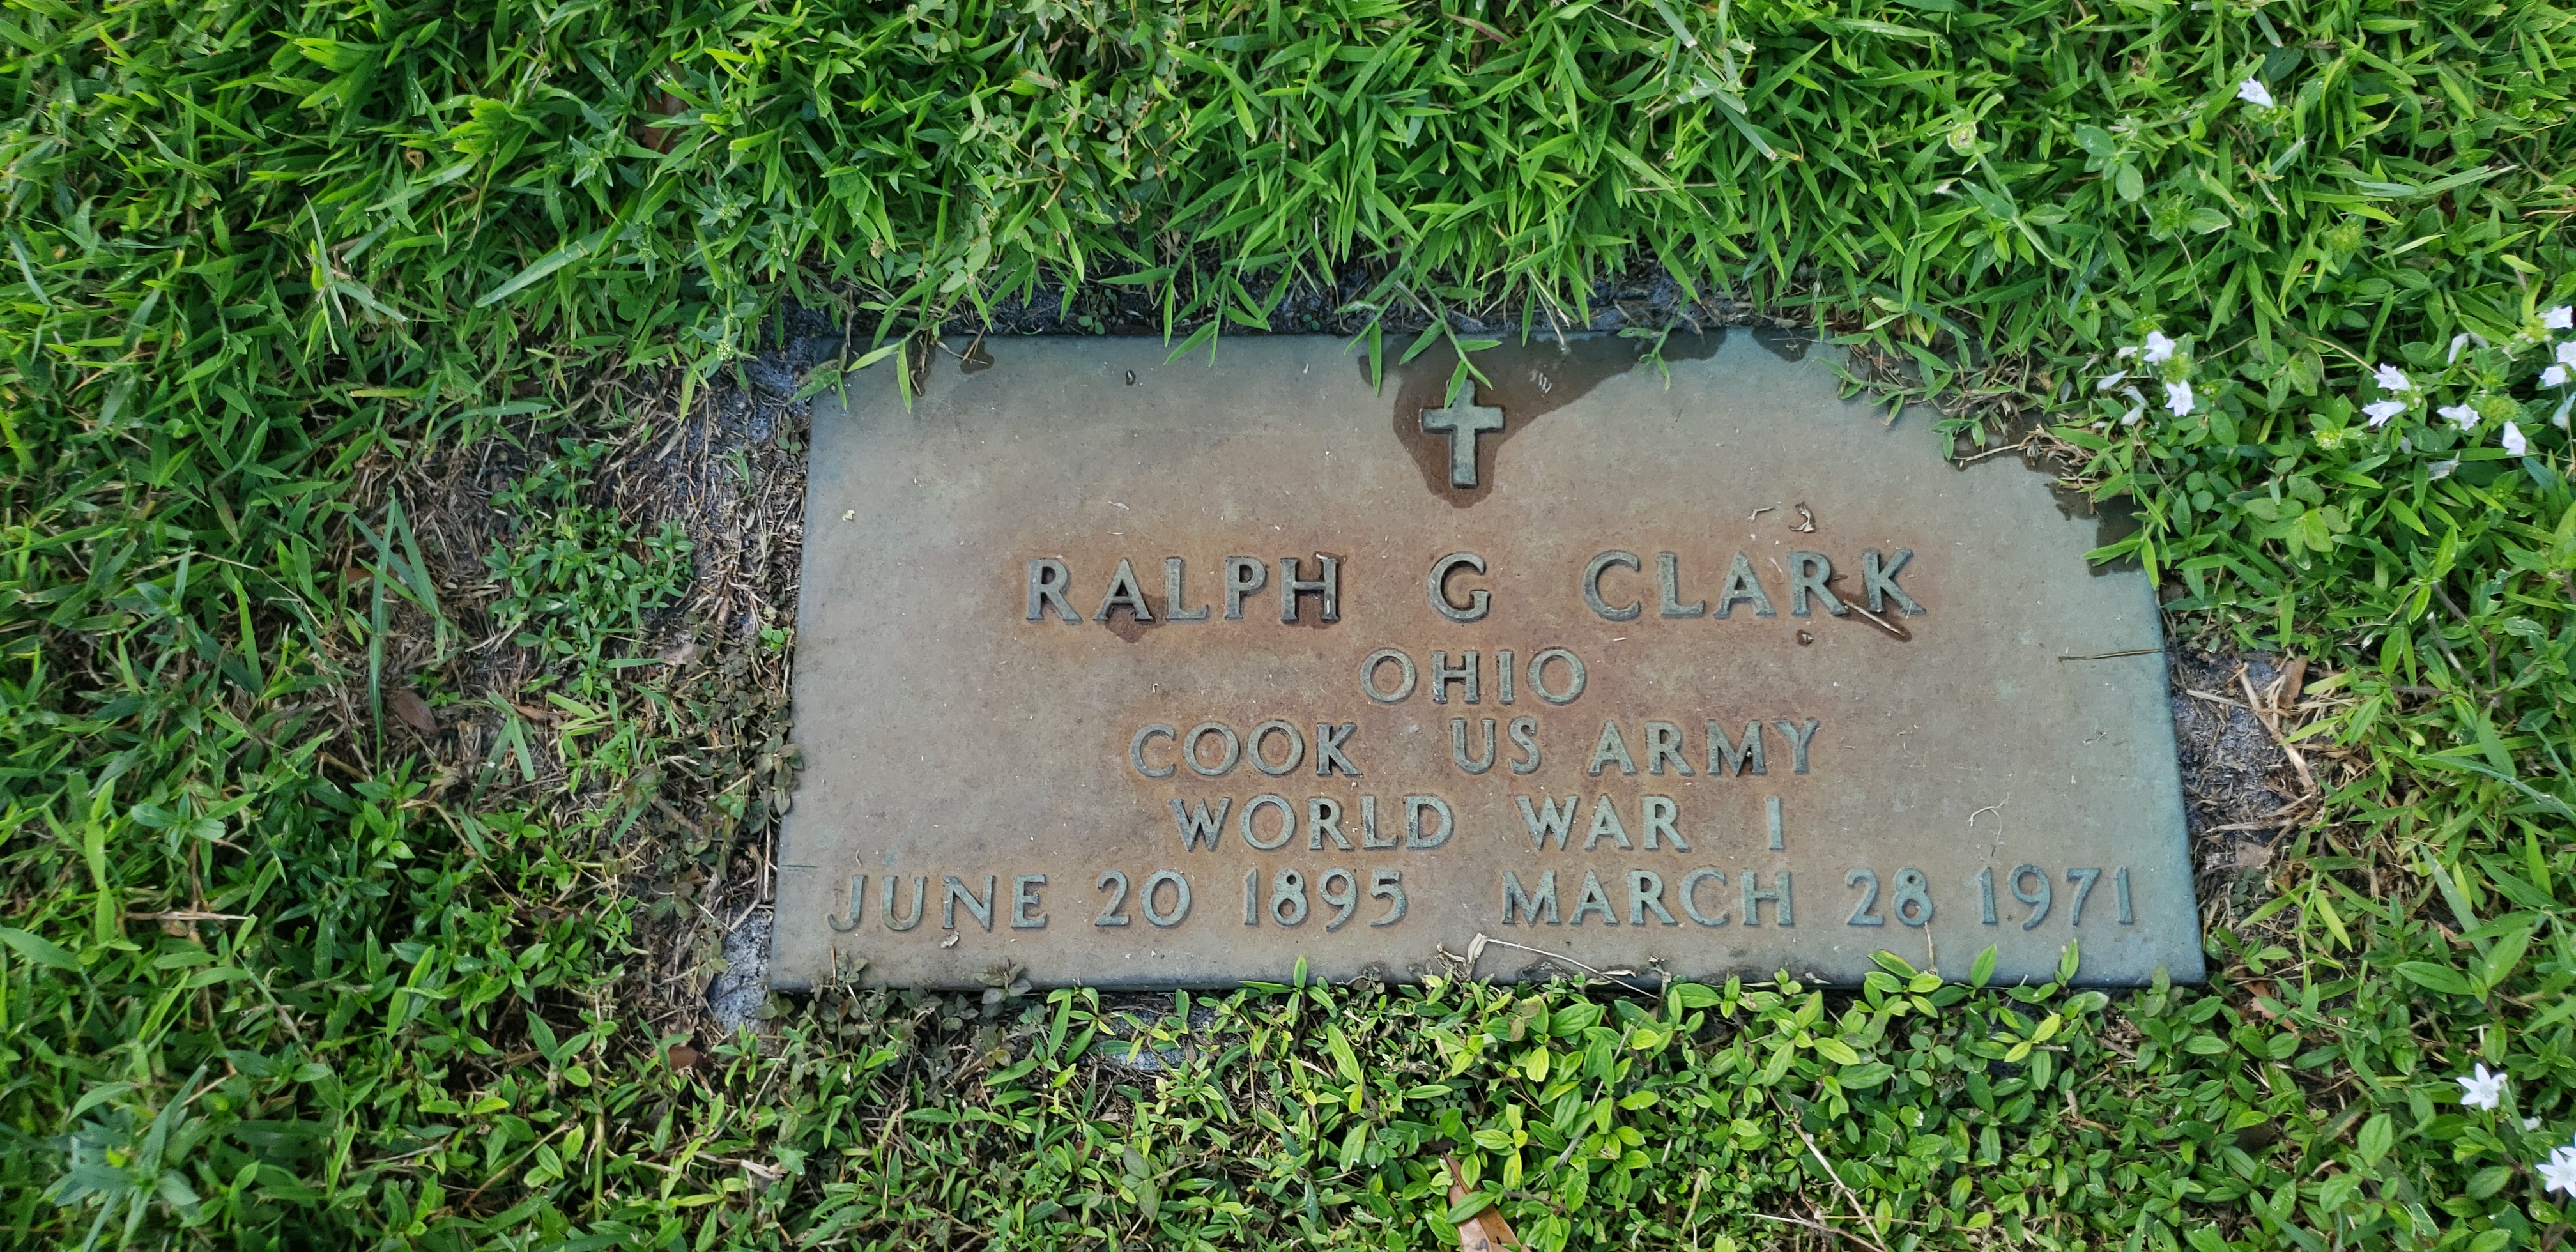 Ralph G Clark